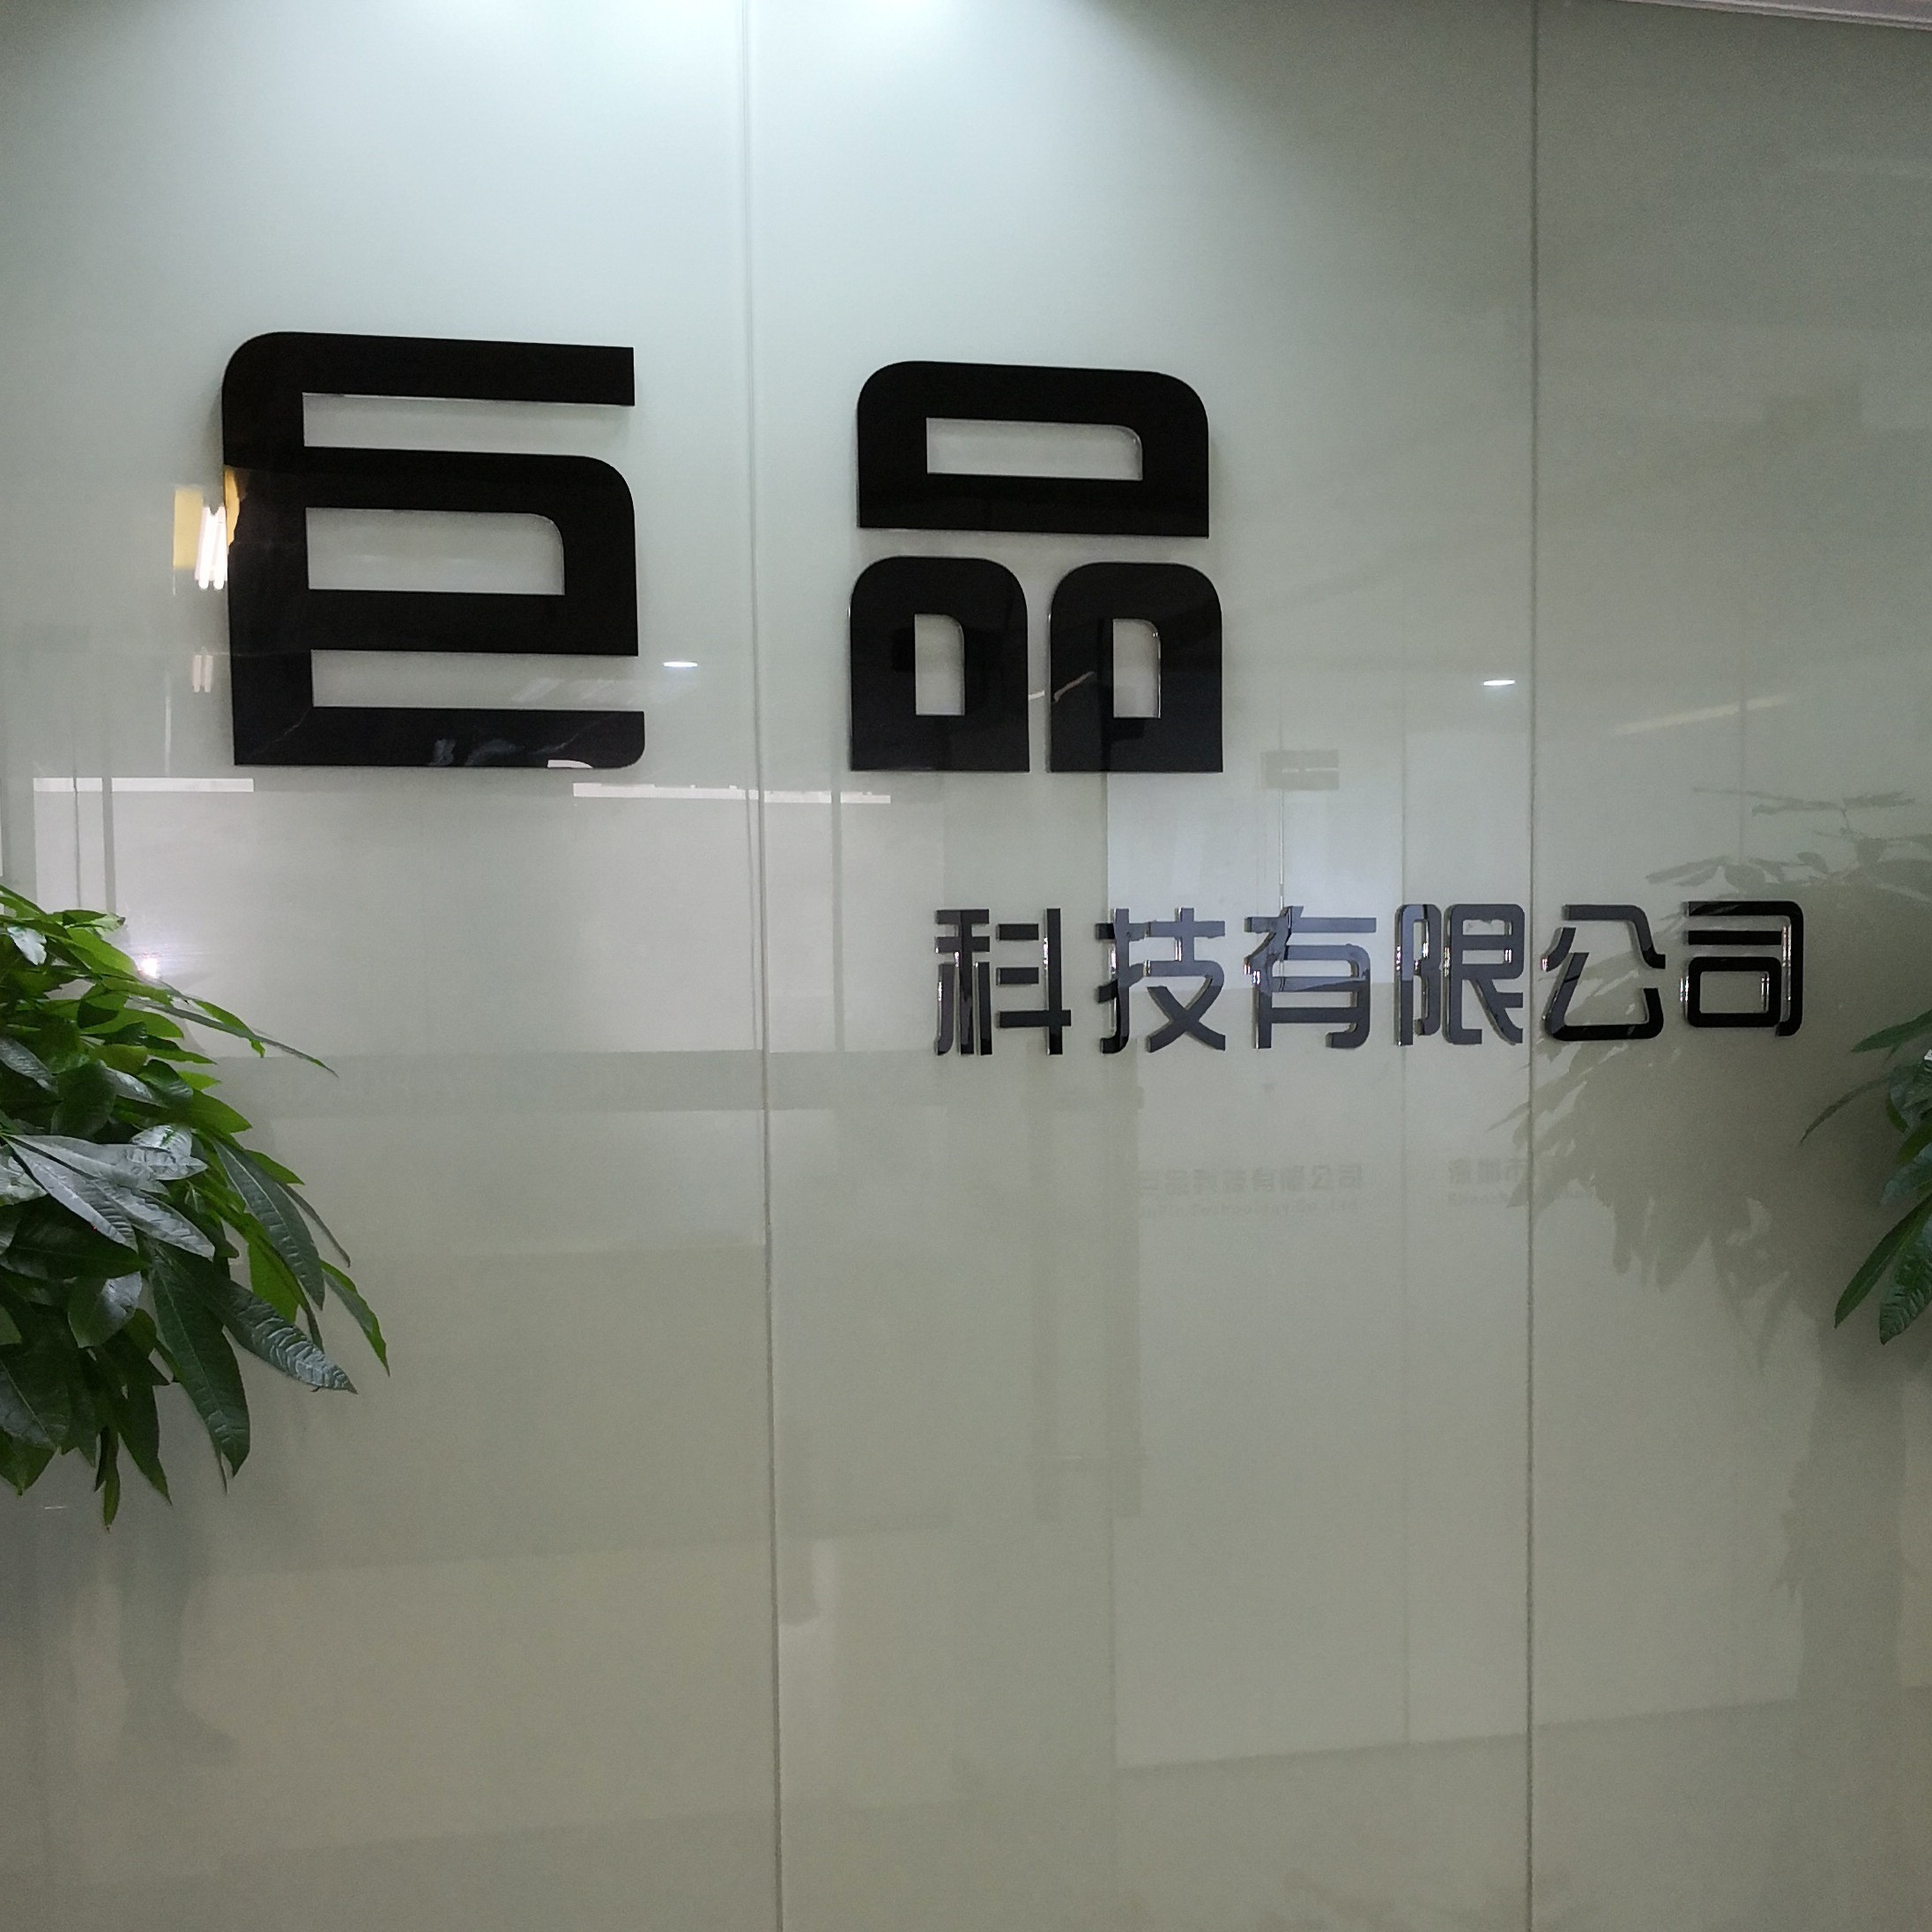 China Shenzhen Jupin Technology Co., Ltd. company profile